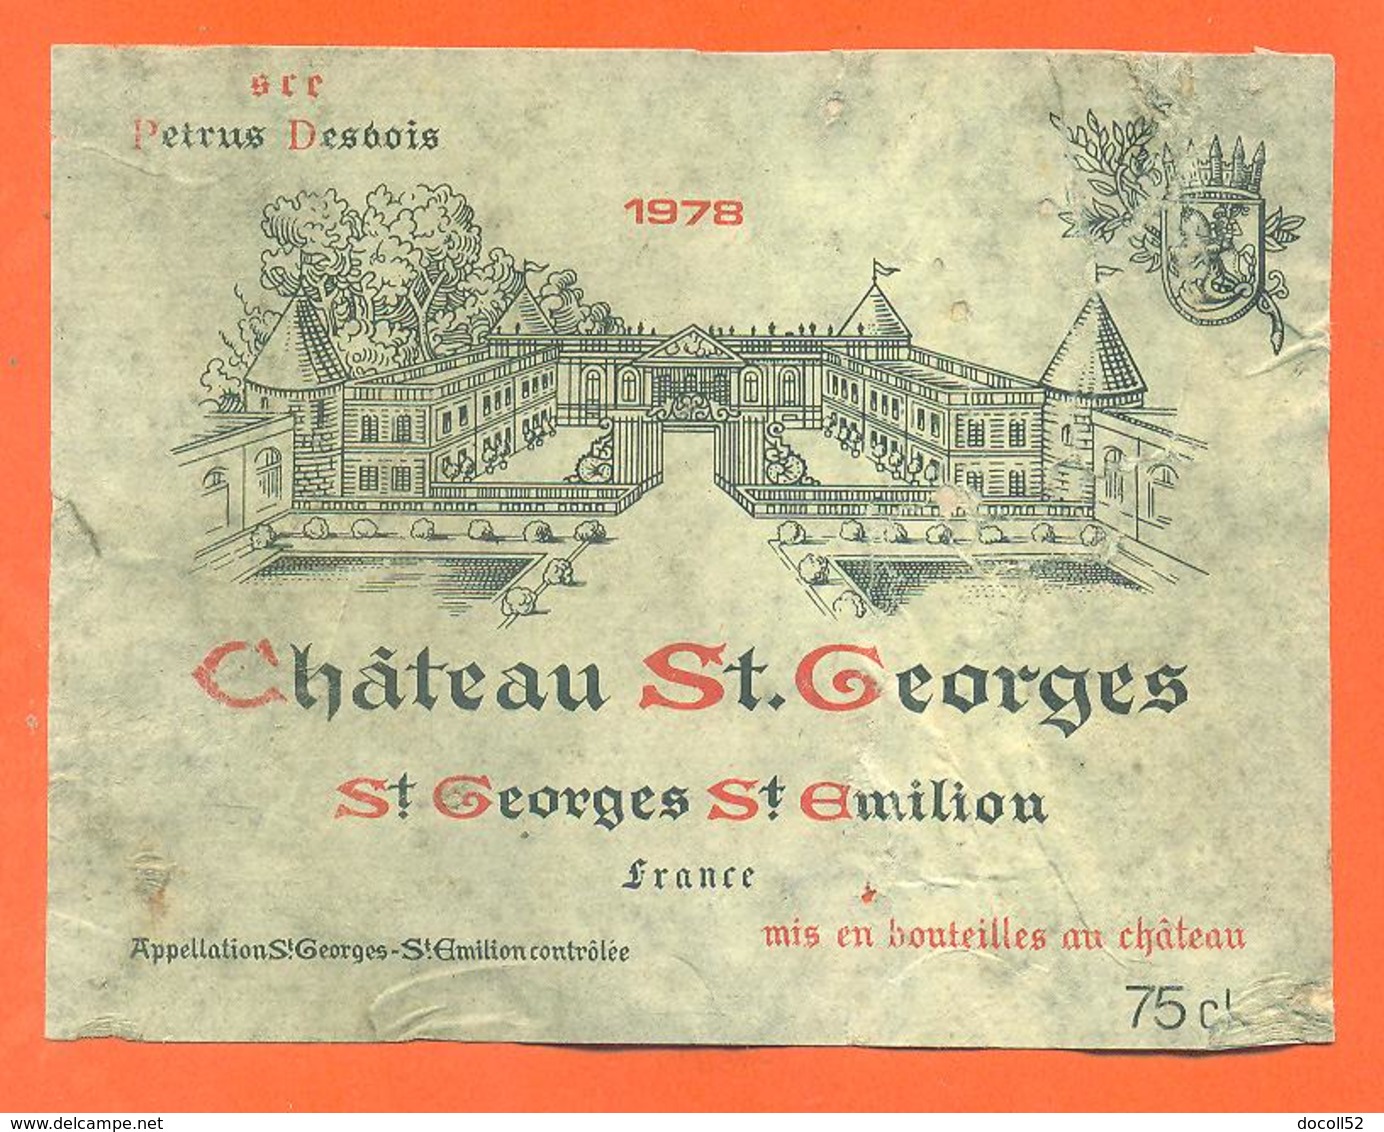 étiquette De Vin De Bordeaux Petrus Desbois St Georges St émilion Chateau Saint Georges 1978 - 75cl - Bordeaux